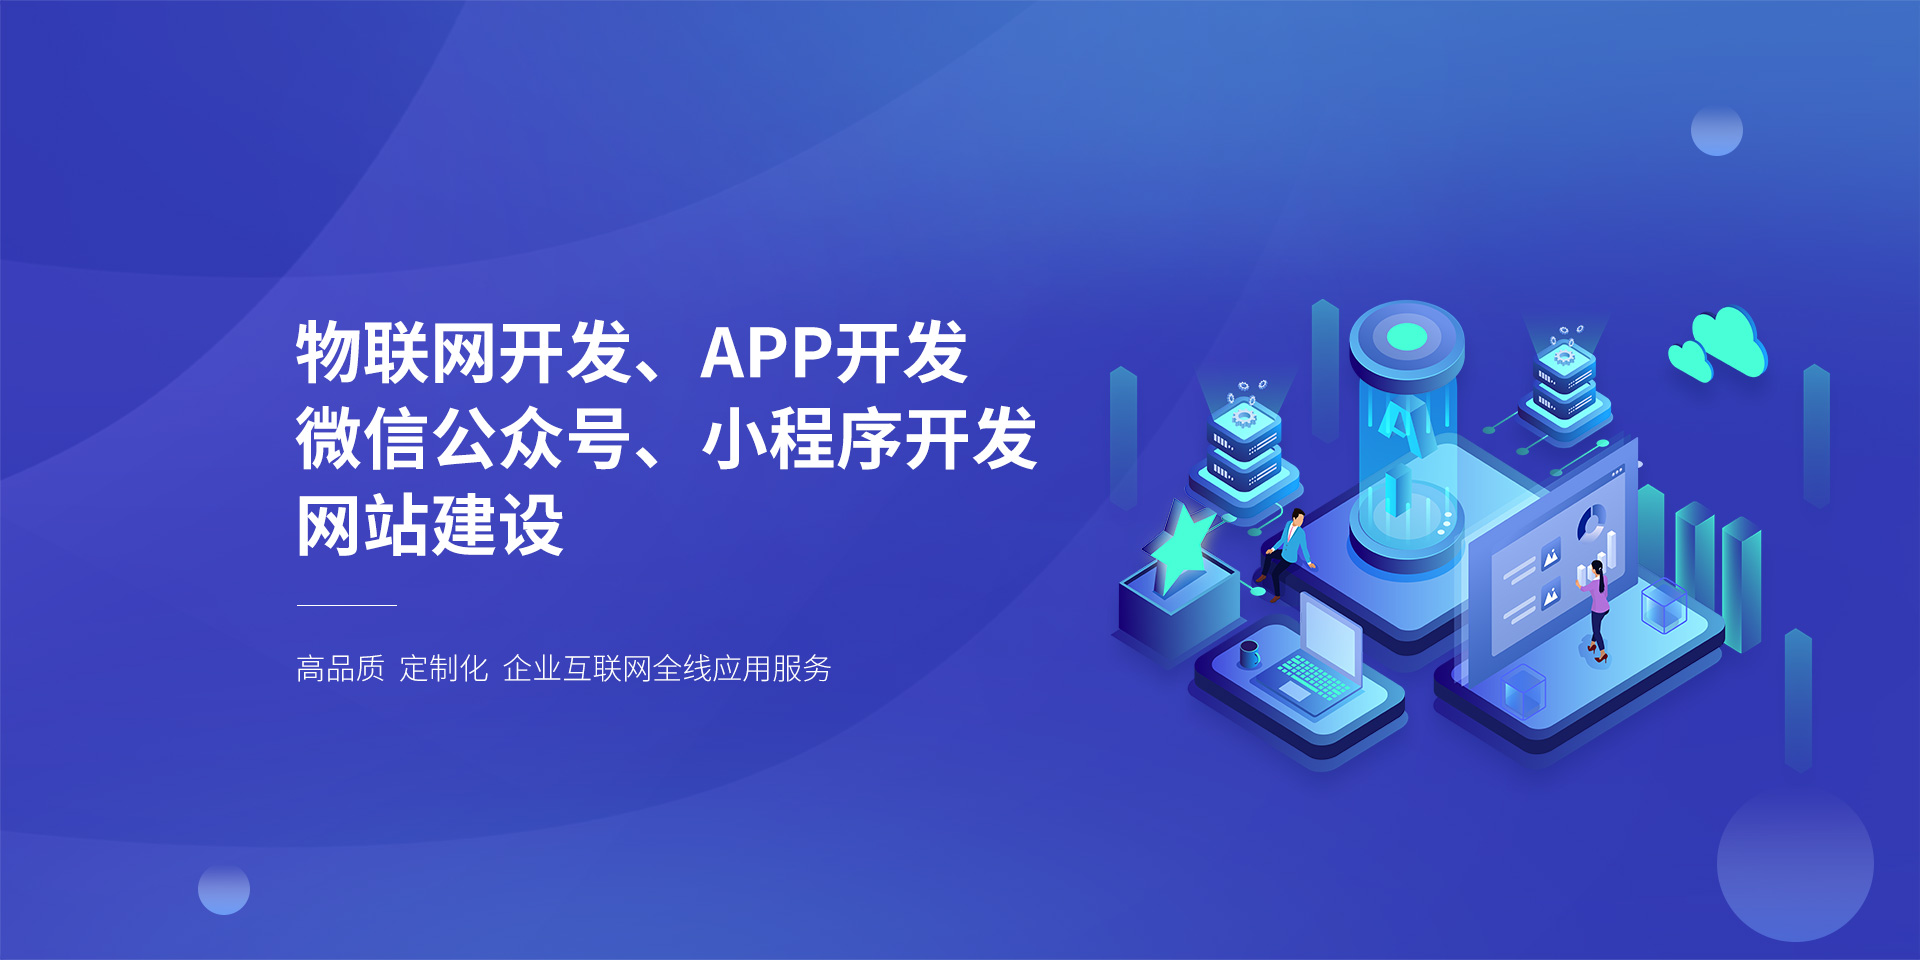 上海微信小程序开发公司_微信小程序商城开发_微信小程序游戏开发